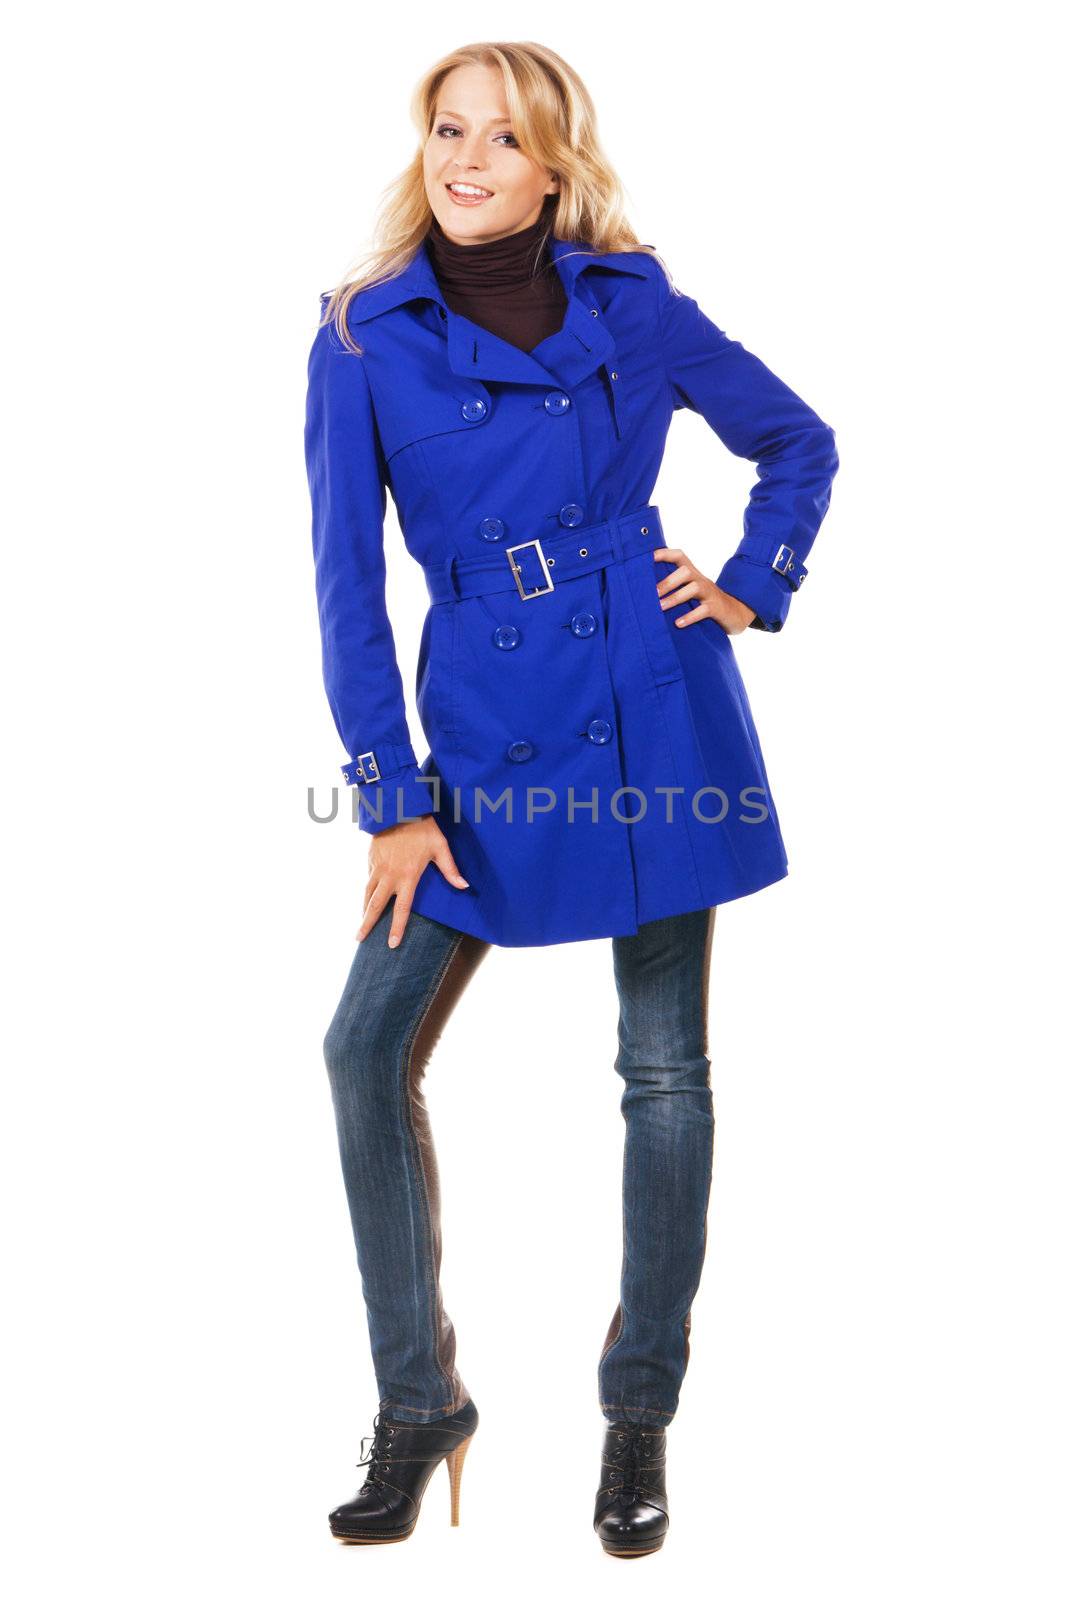 Pretty model in a blue coat by Gdolgikh